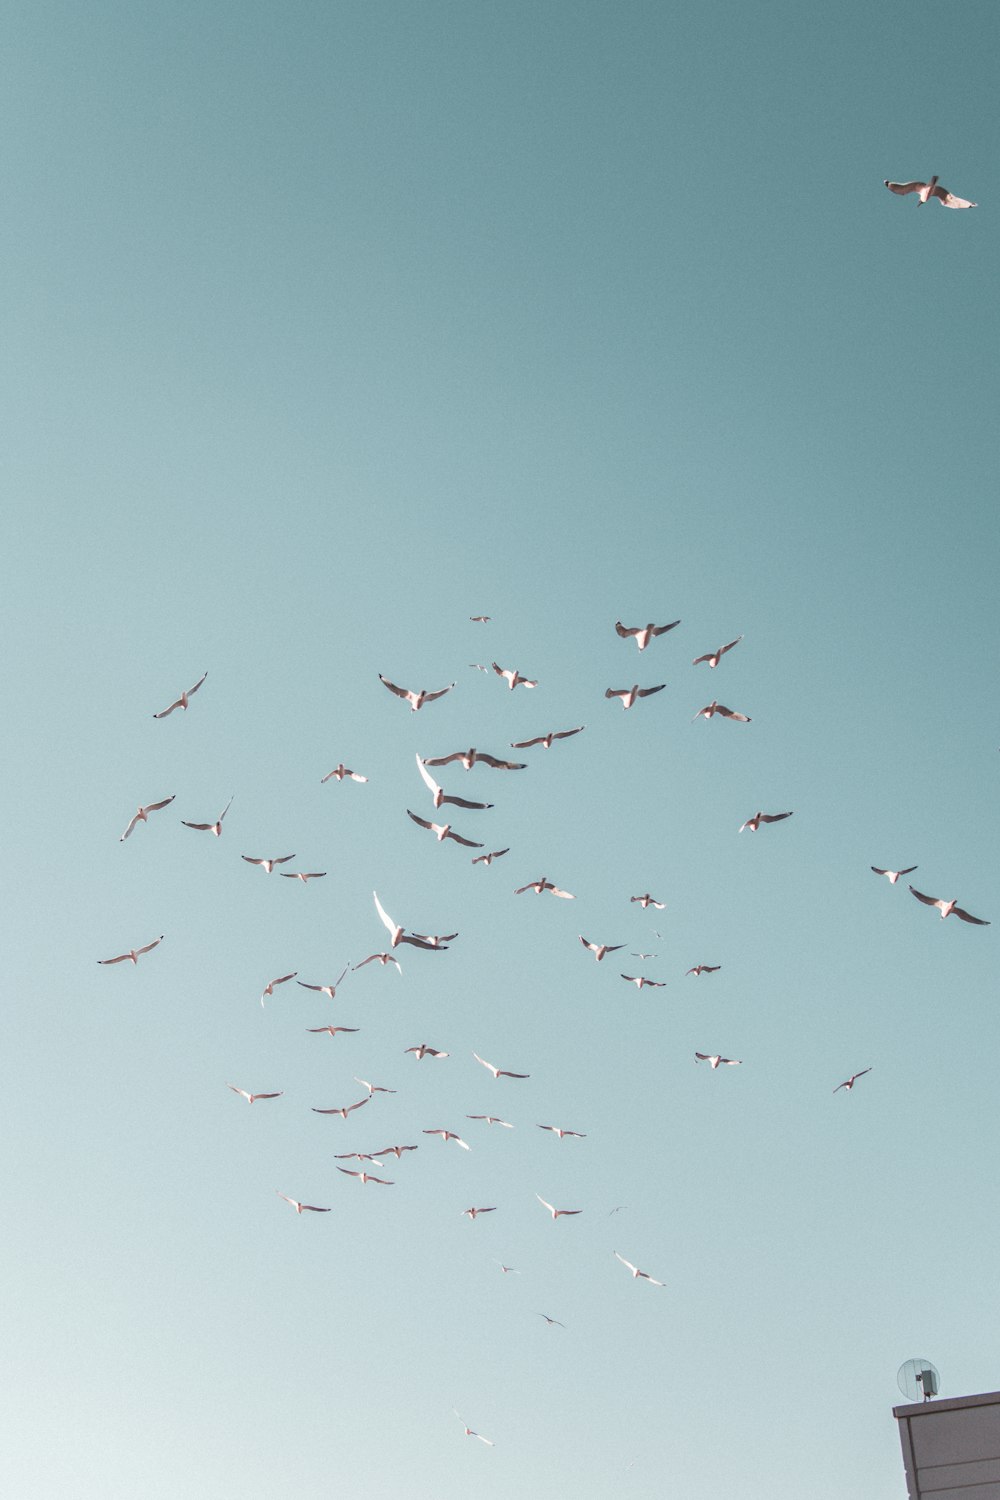 pájaros blancos volando